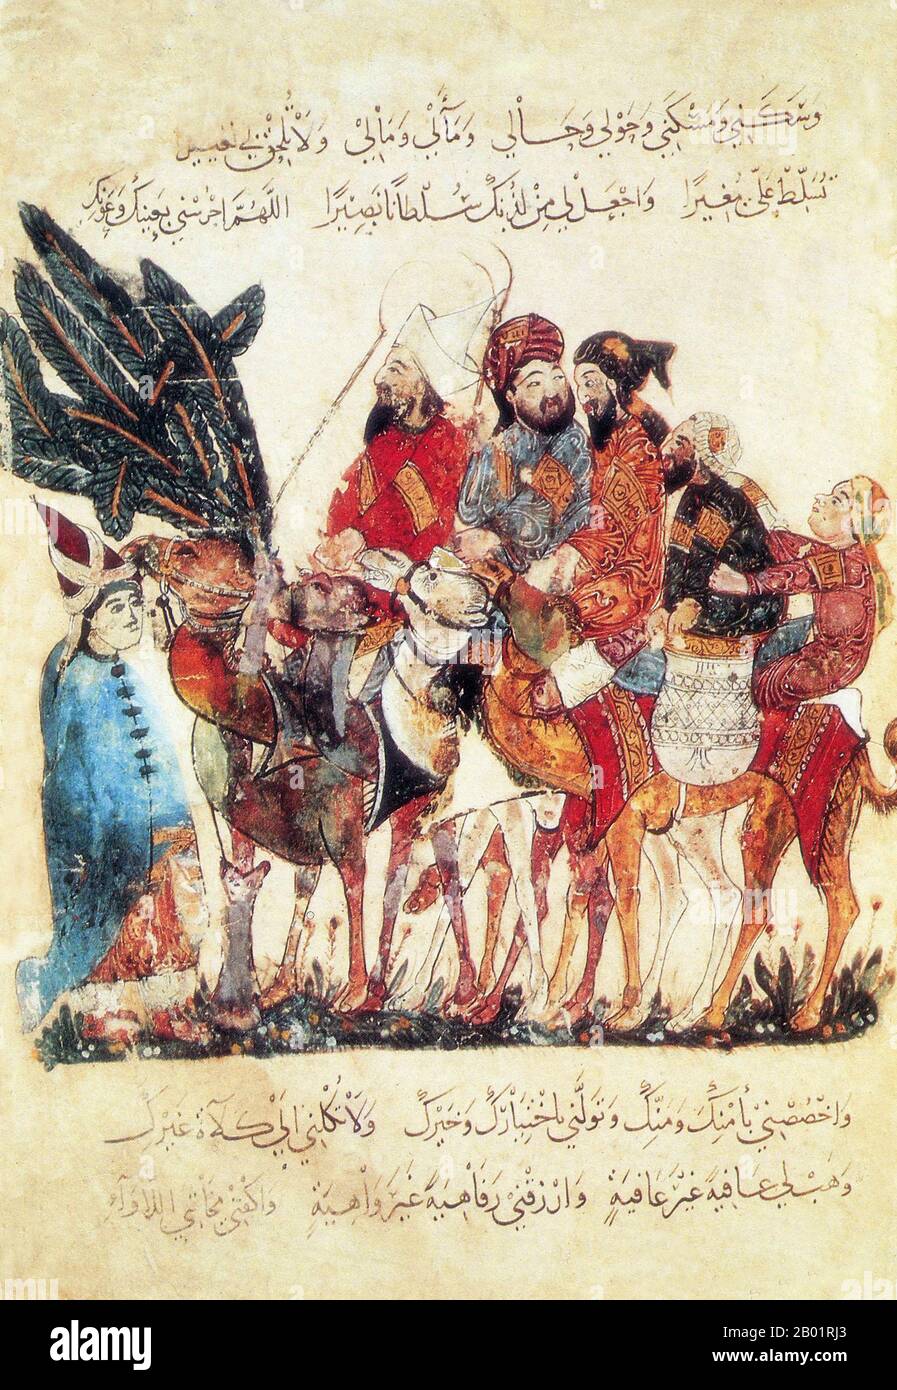 Irak: Händler in einer Kamelkarawane. Miniaturgemälde von Yahya ibn Mahmud al-Wasiti, 1237 n. Chr. Yahyâ ibn Mahmûd al-Wâsitî war ein arabischer islamischer Künstler aus dem 13. Jahrhundert. Al-Wasiti wurde in Wasit im südlichen Irak geboren. Er war bekannt für seine Illustrationen des Maqam von al-Hariri. Maqāma (wörtlich „Versammlungen“) sind ein (ursprünglich) arabisches literarisches Genre der Reimprosa mit Gedichtabständen, in denen rhetorische Extravaganz auffallend ist. Der Autor Badī al-Zaman al-Hamadhāni aus dem 10. Jahrhundert soll die Form erfunden haben, die im nächsten Jahrhundert von al-Hariri von Basra erweitert wurde. Stockfoto